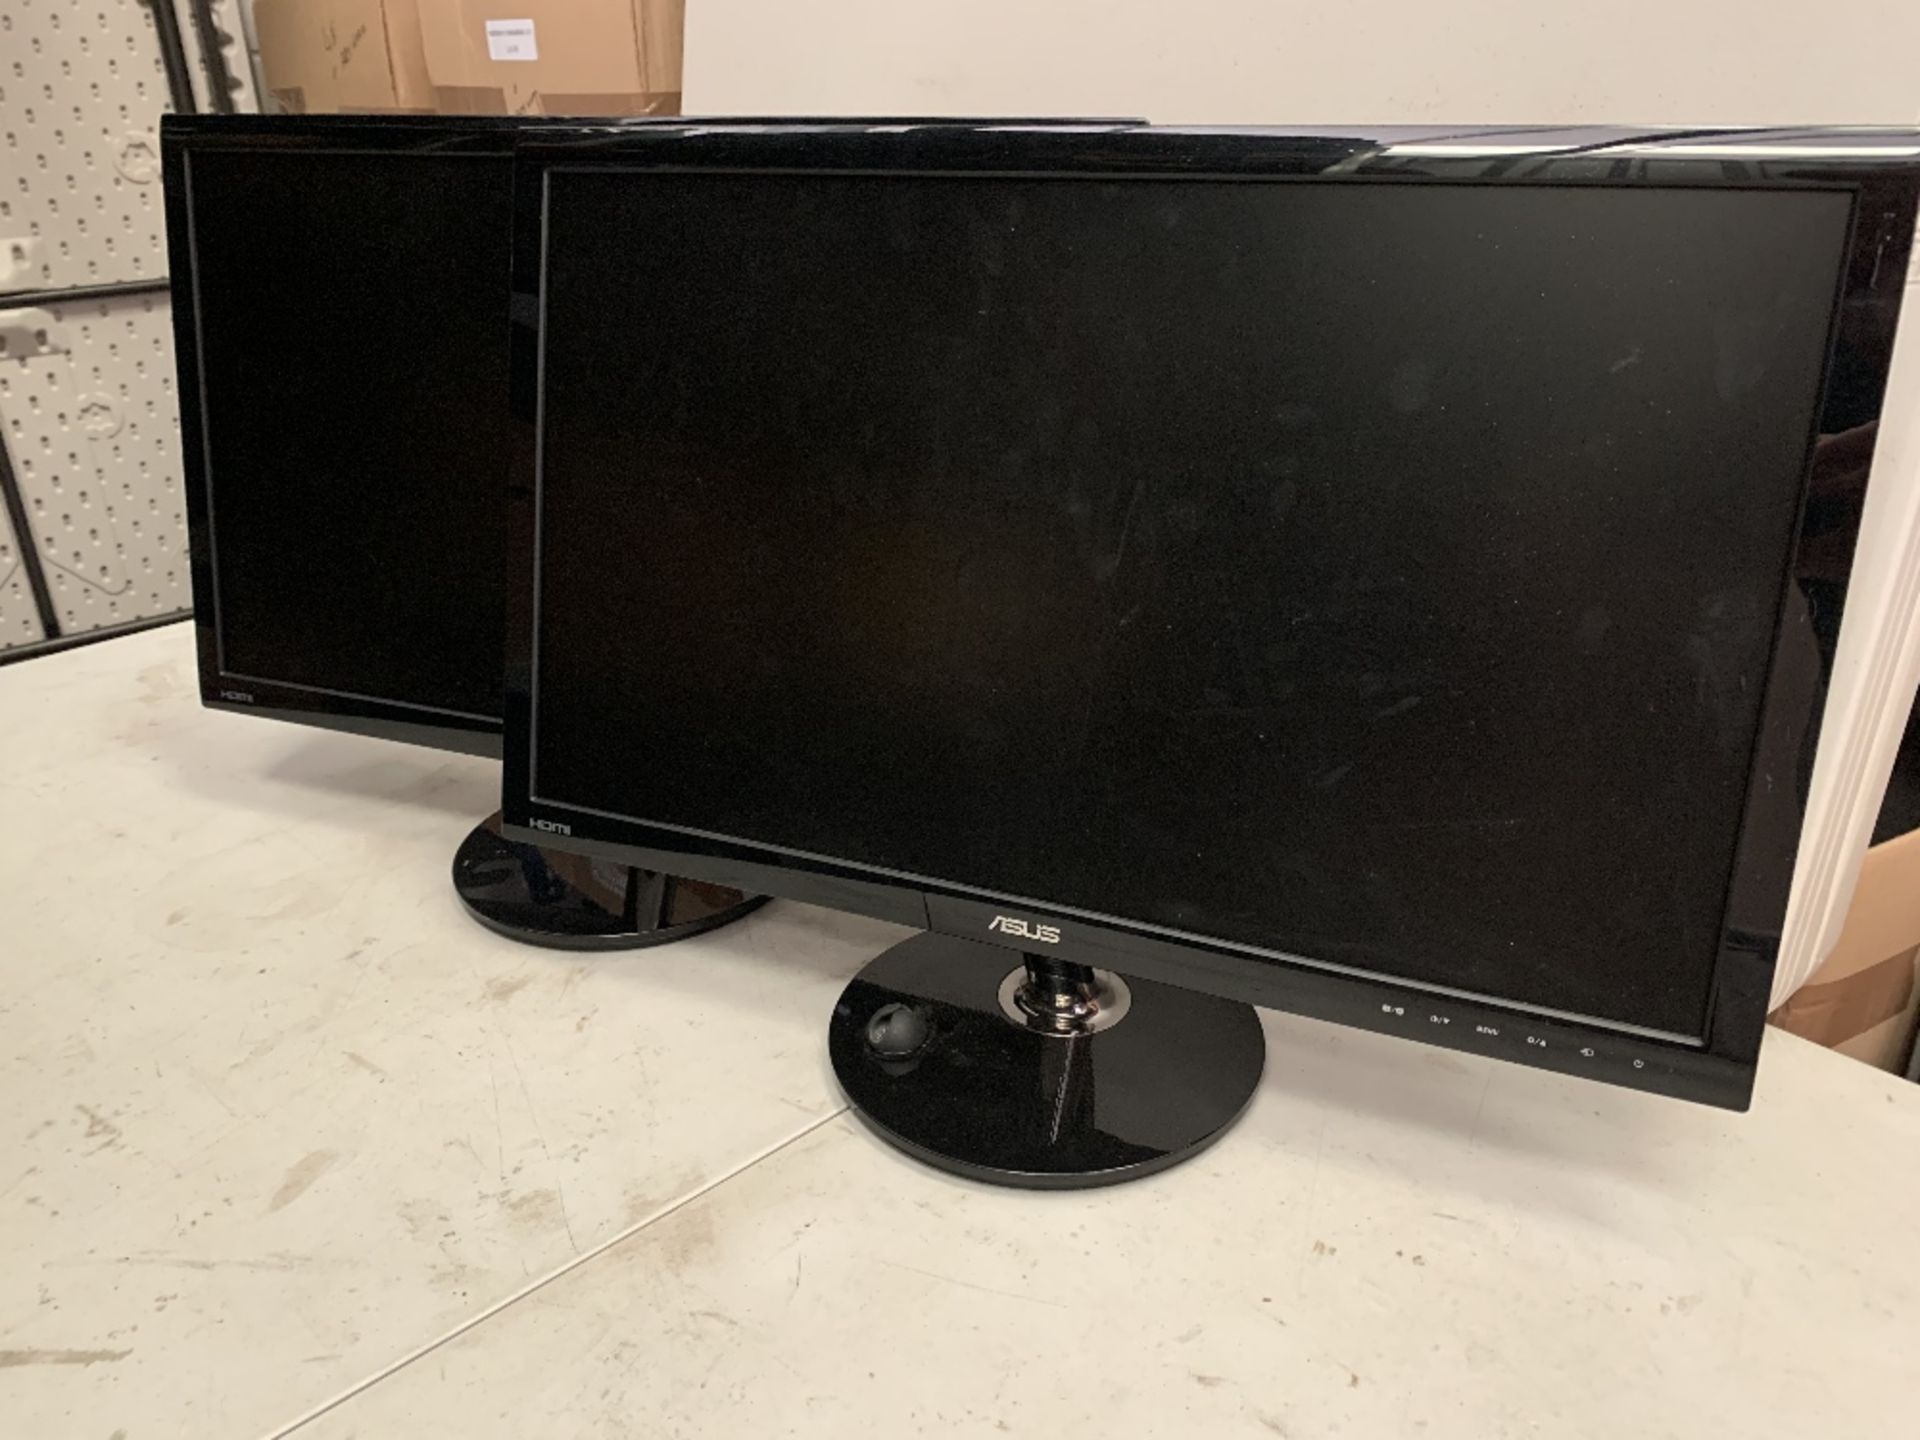 Two Asus 24'' LCD monitors VS248.